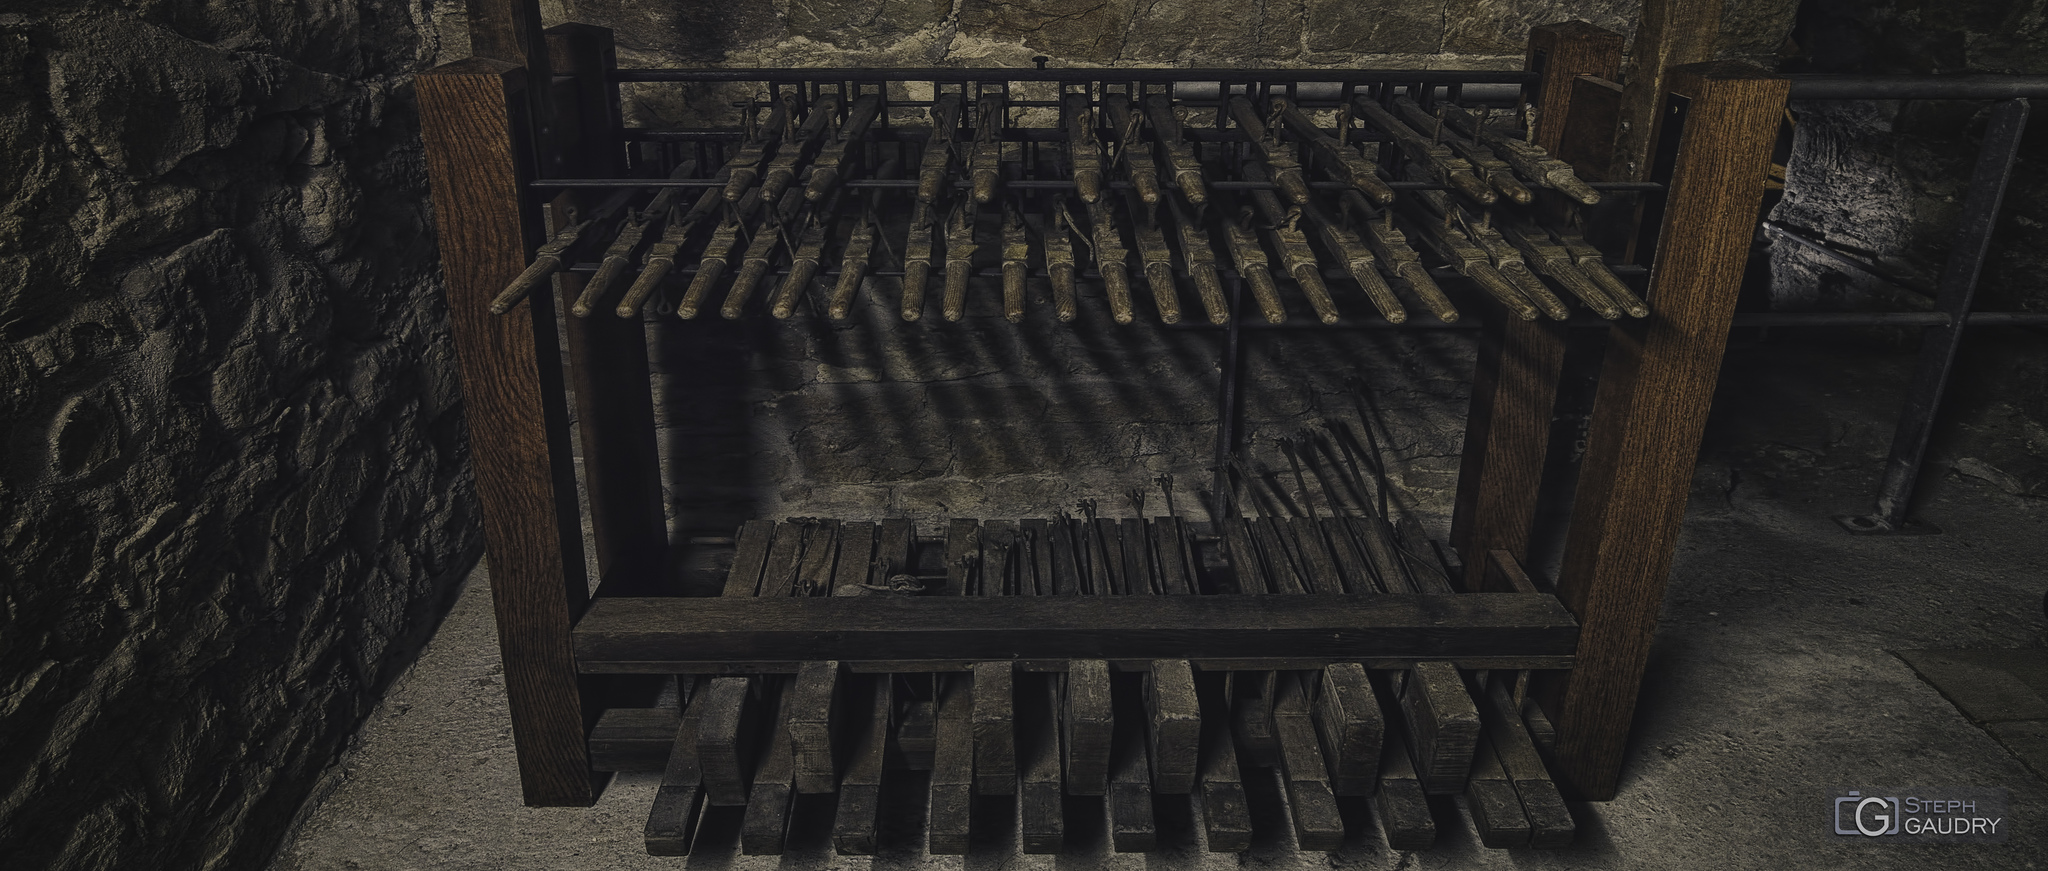 Clavier du carillon de la collégiale Saint-Barthélemy [Click to start slideshow]